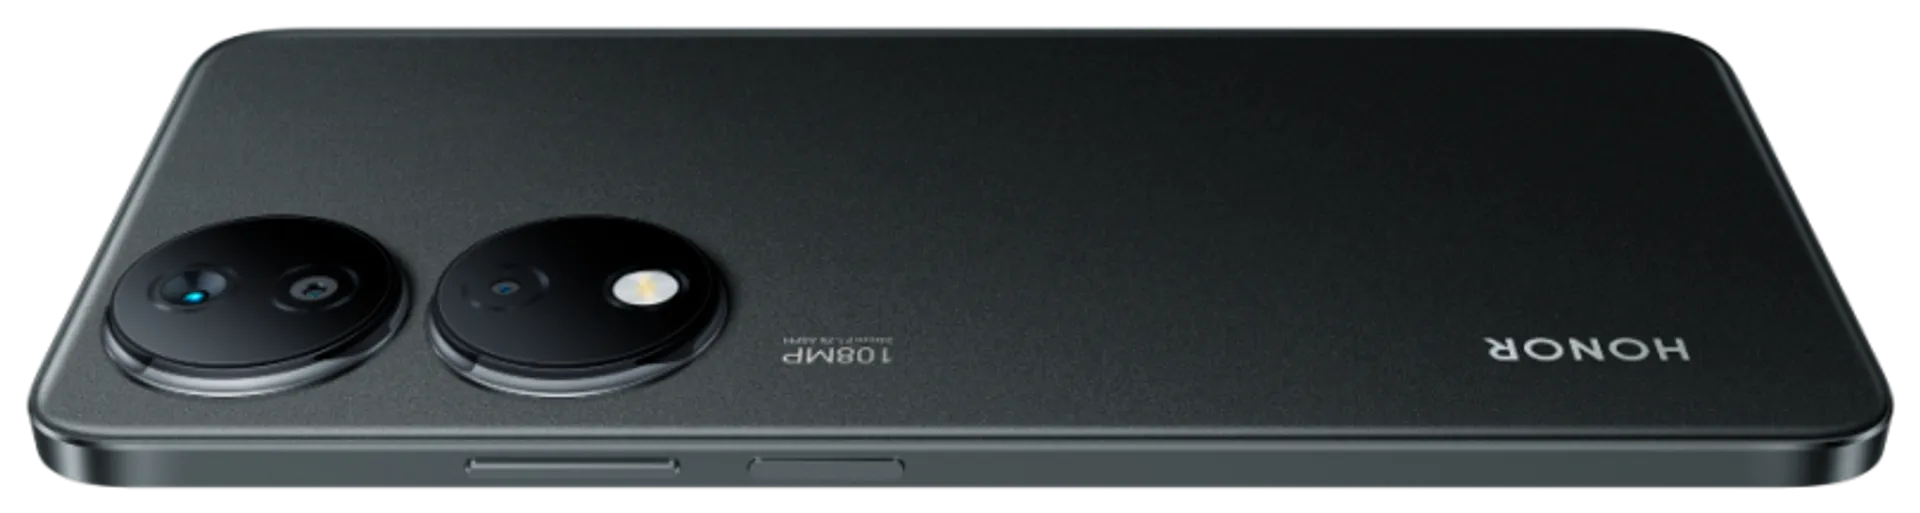 HONOR X7b 6GB+128GB Musta älypuhelin - 6